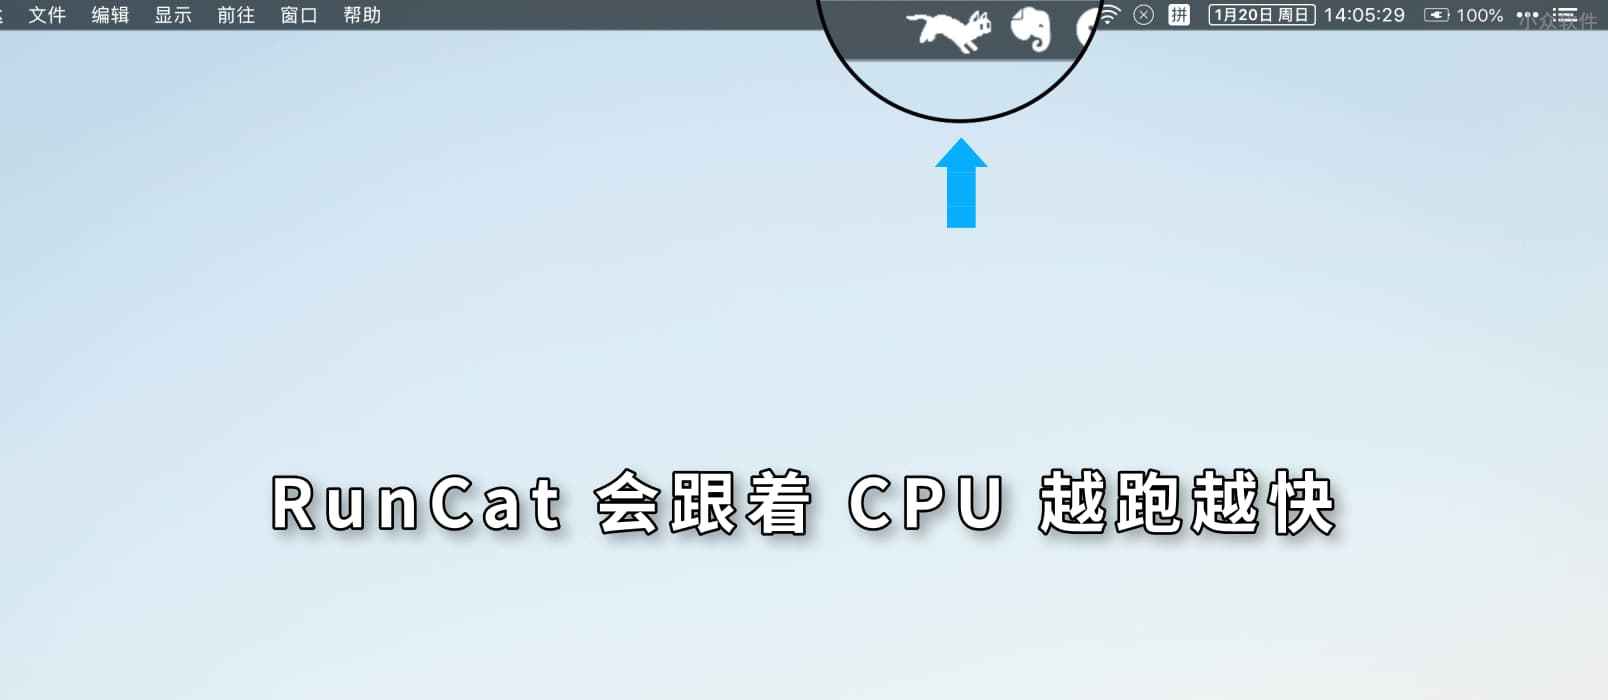 RunCat – 在 macOS 顶部菜单栏随 CPU 越跑越快的猫